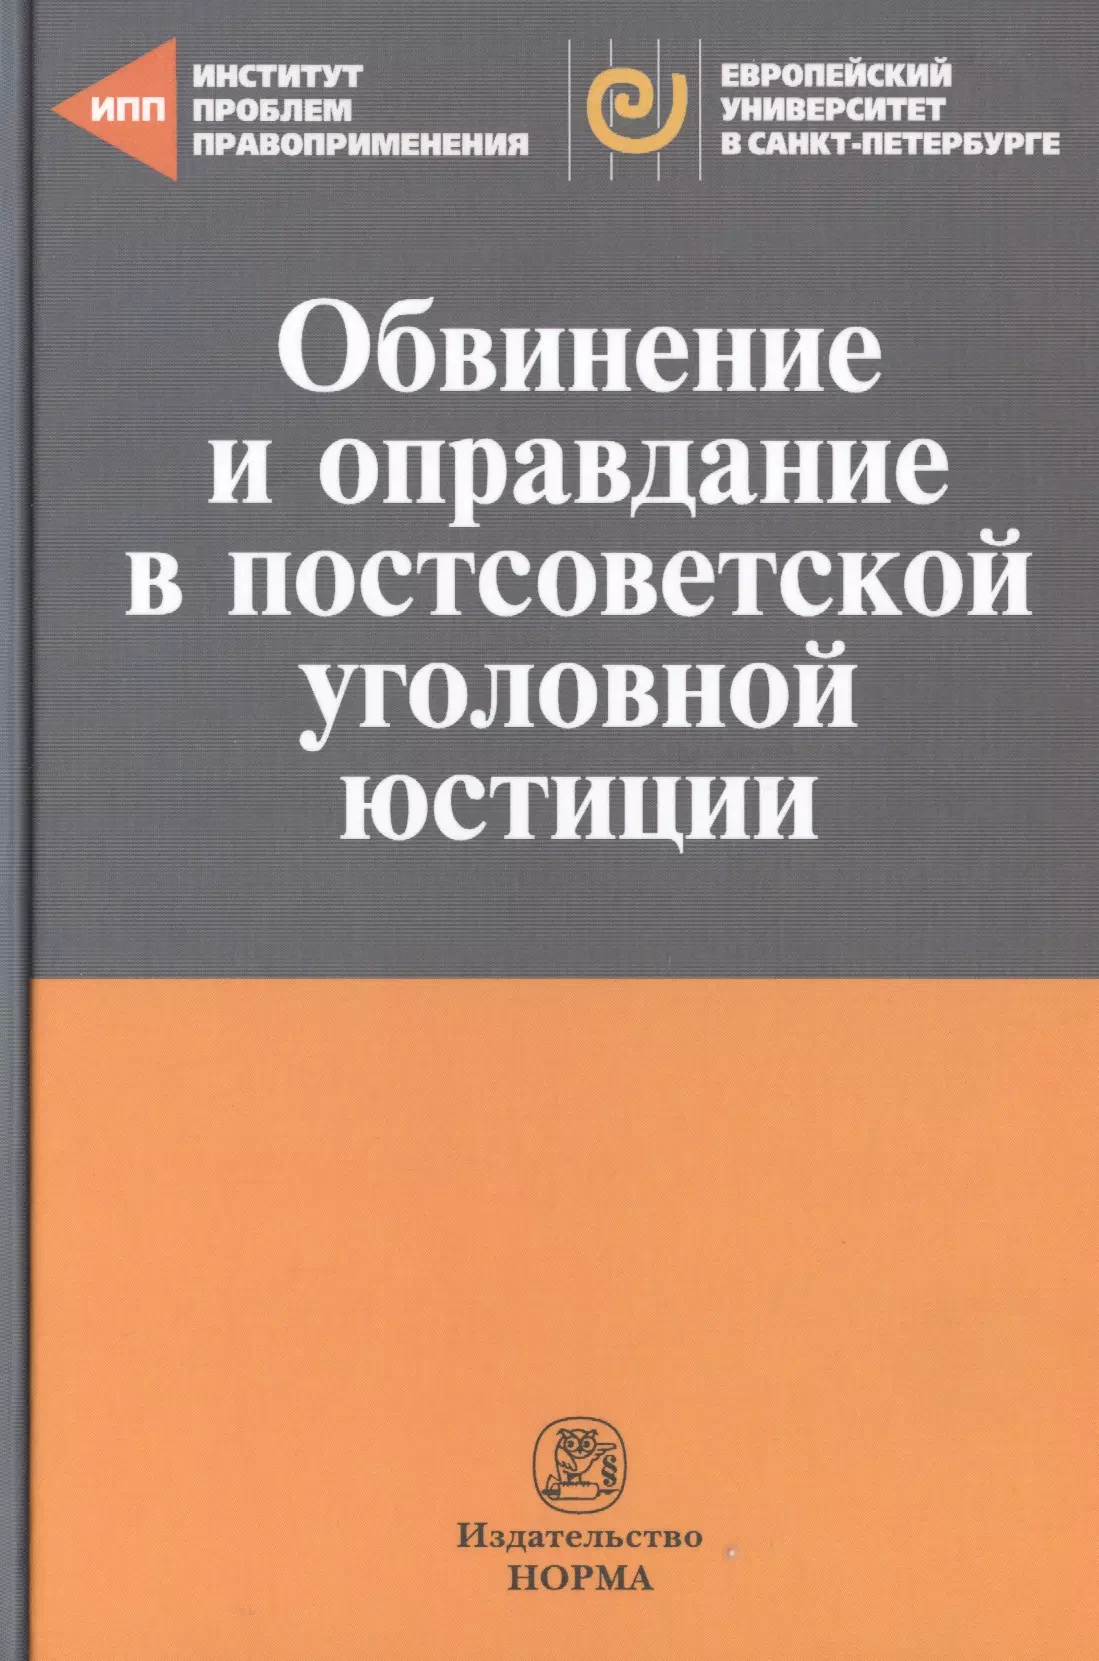 Главные изменения в постсоветском уголовном законодательстве. Юридические сборники статей